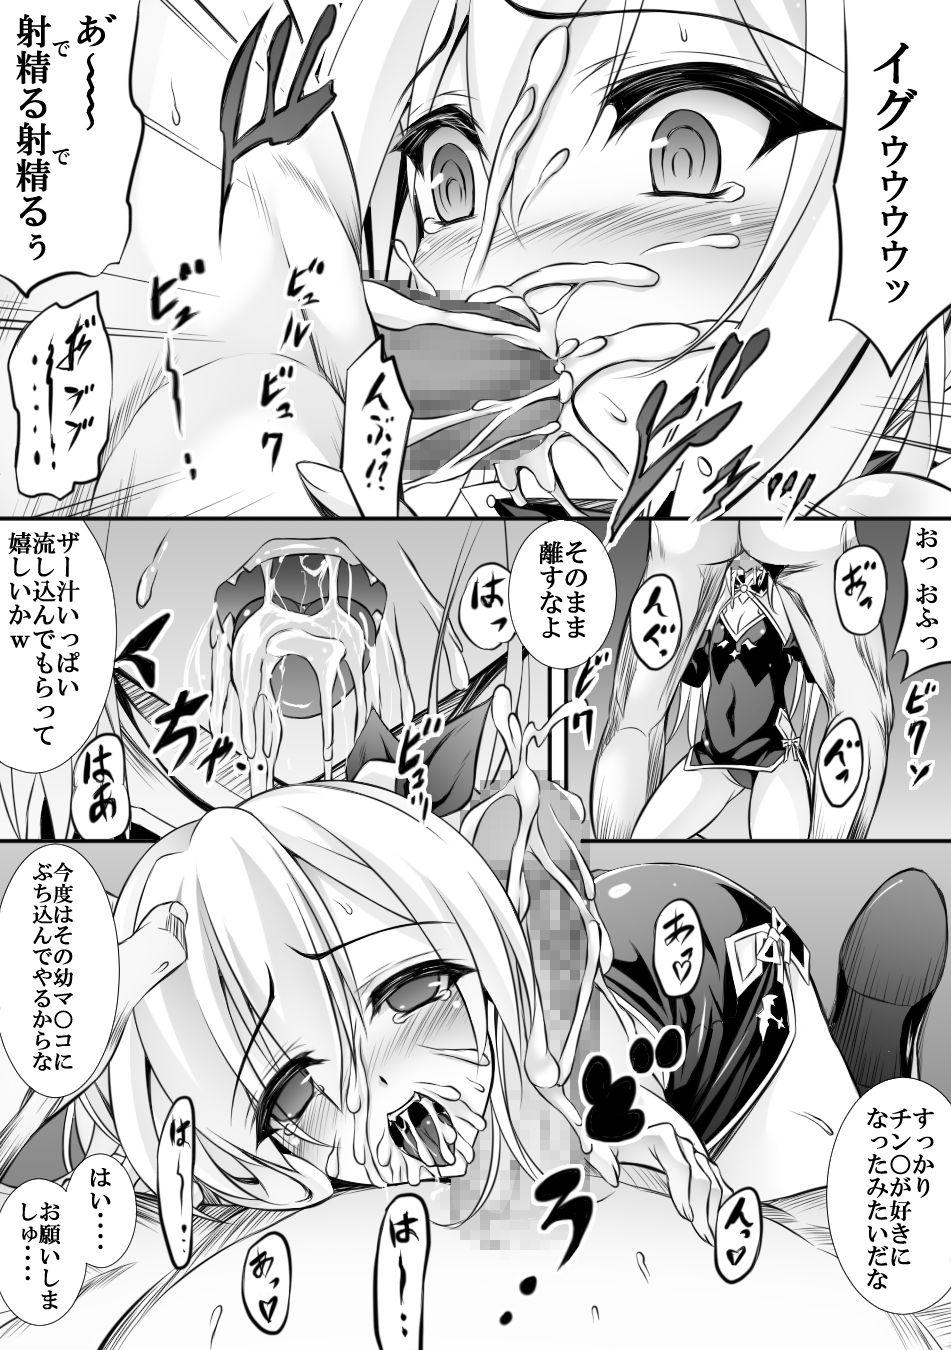 AzuLan 1 Page Manga 3